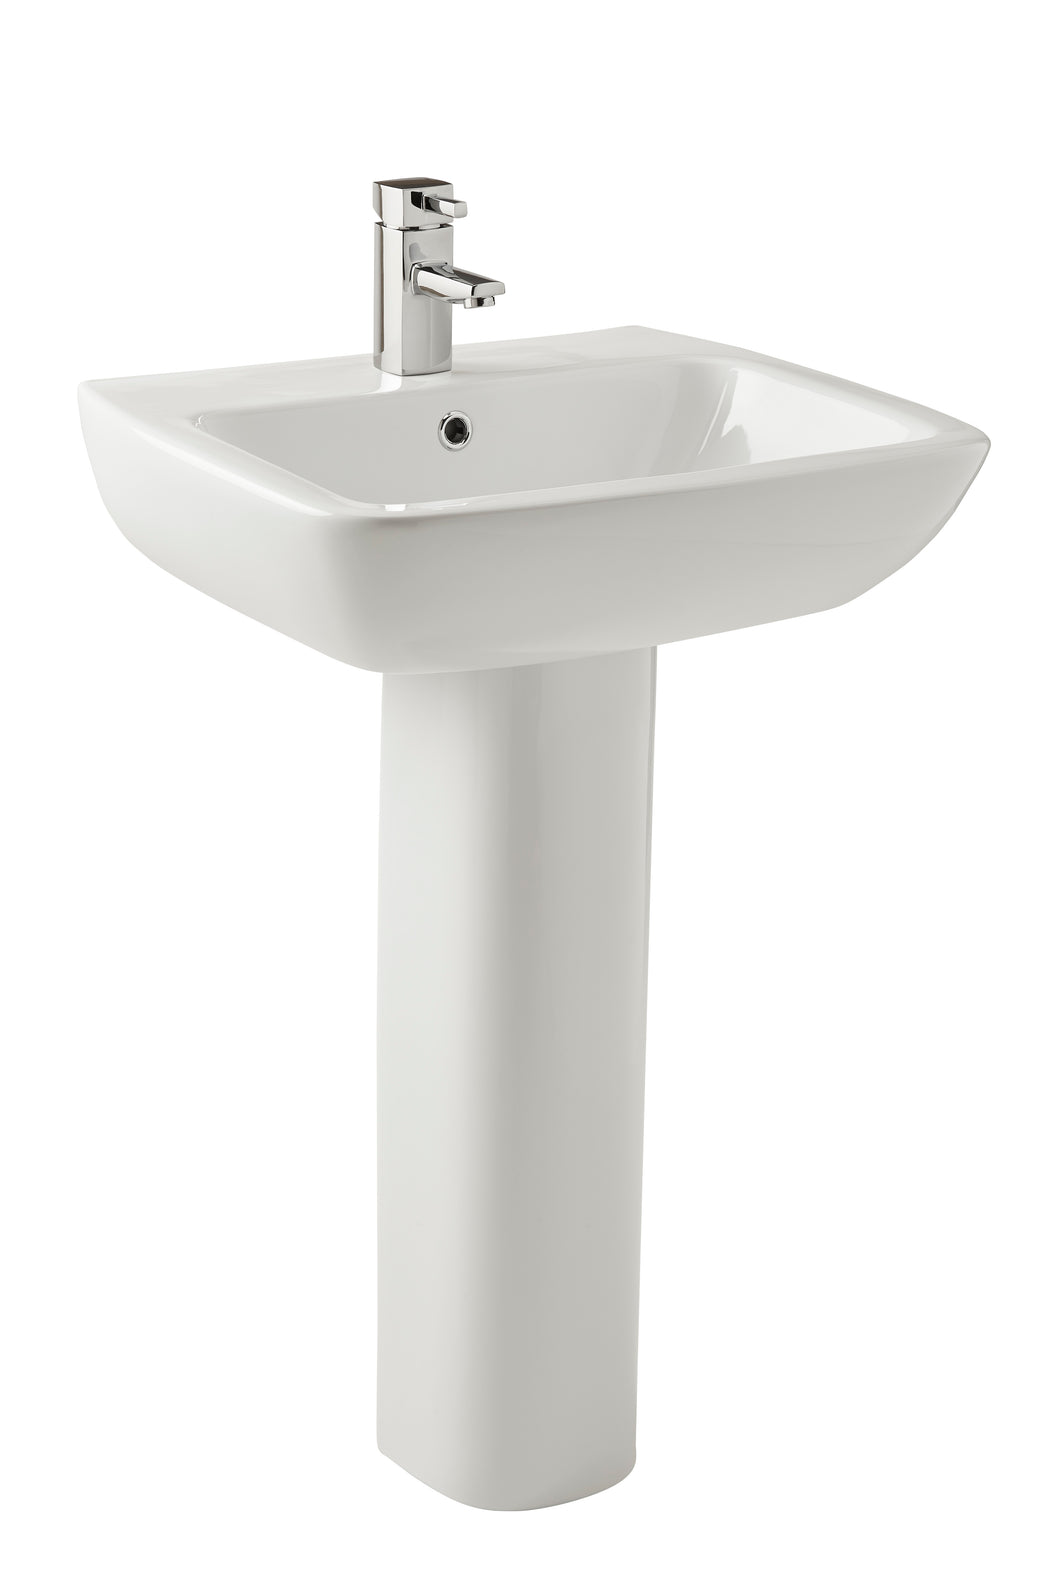 Vares-A Bathroom Sink Basin & Pedestal  550mm 1 Tap Hole - White